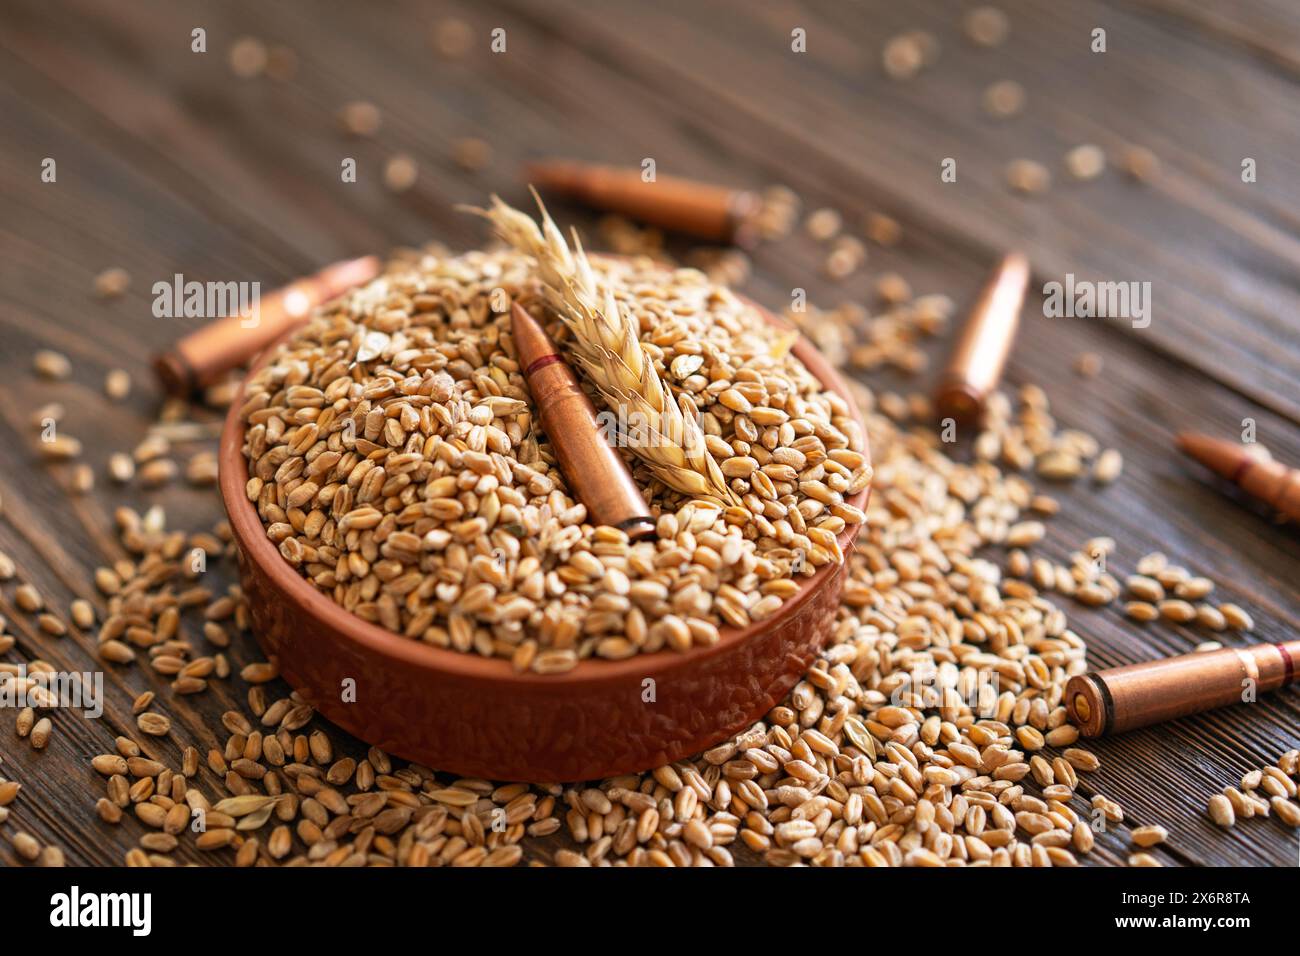 Les grains de blé sont répartis sur une table en bois, entrecoupée de plusieurs obus métalliques. Le concept de la photo suggère que le grain peut être utilisé Banque D'Images